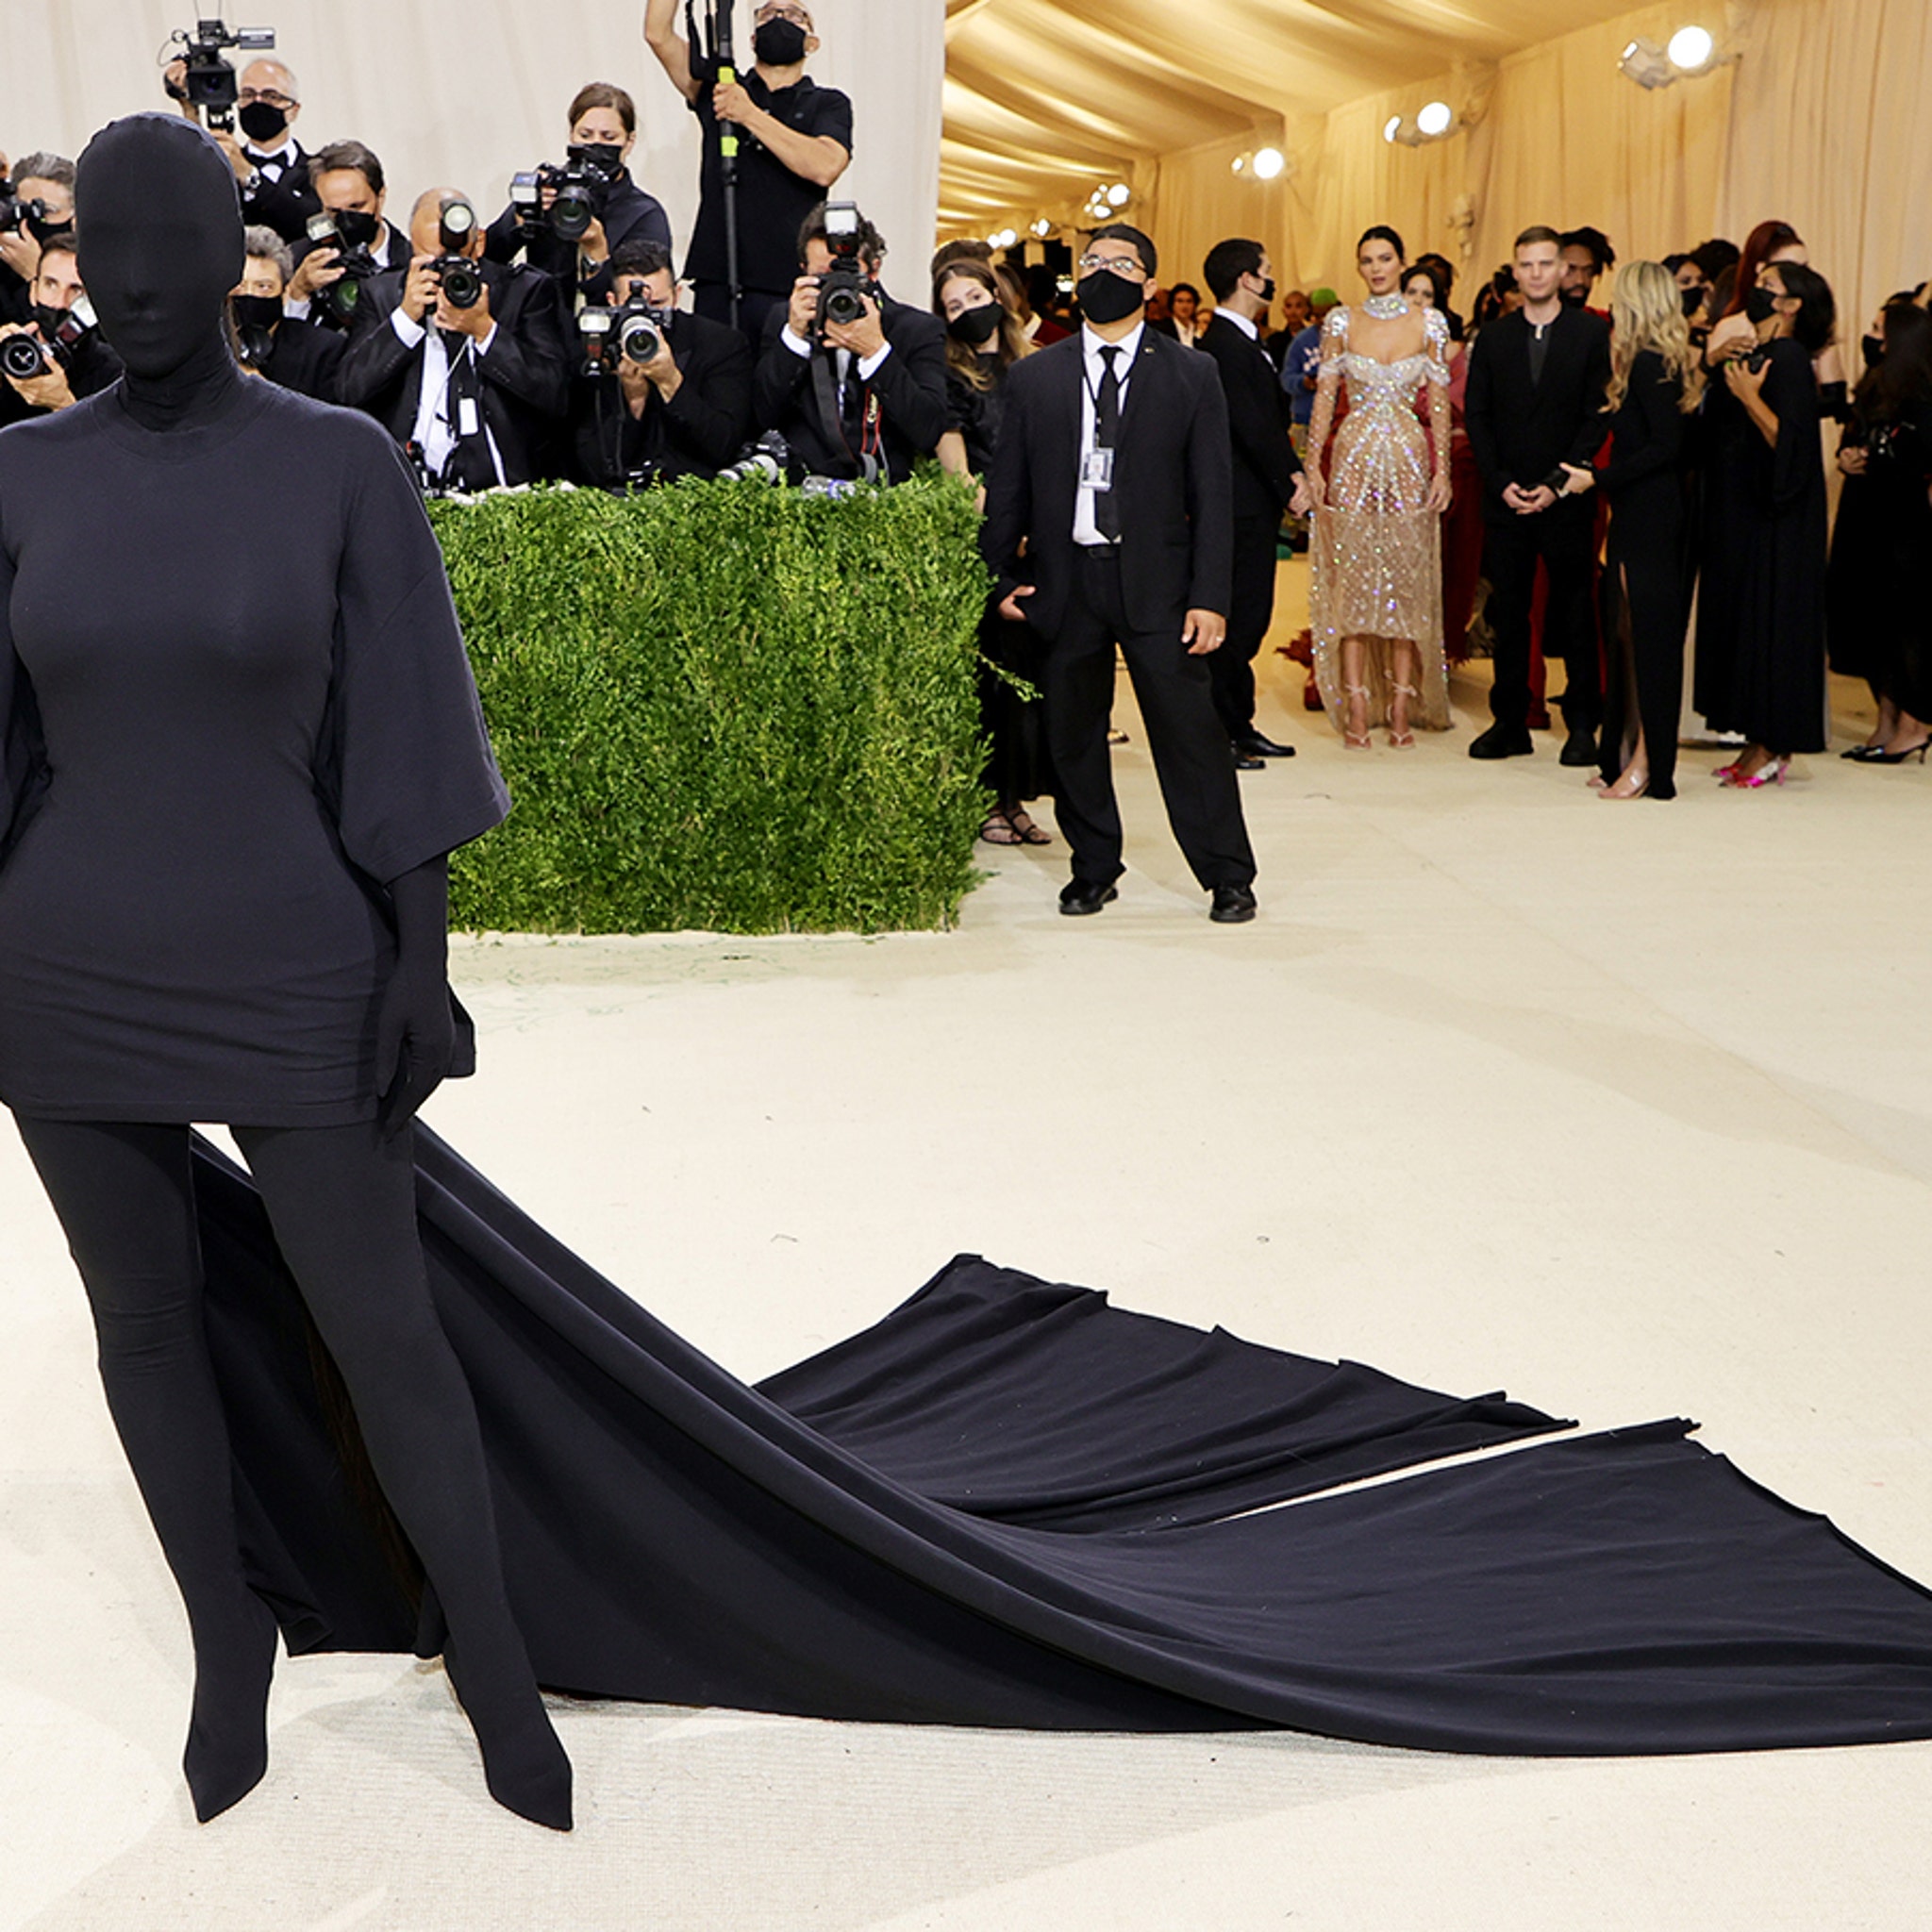 LOOK Faceless Kim Kardashian turns heads at 2021 Met Gala